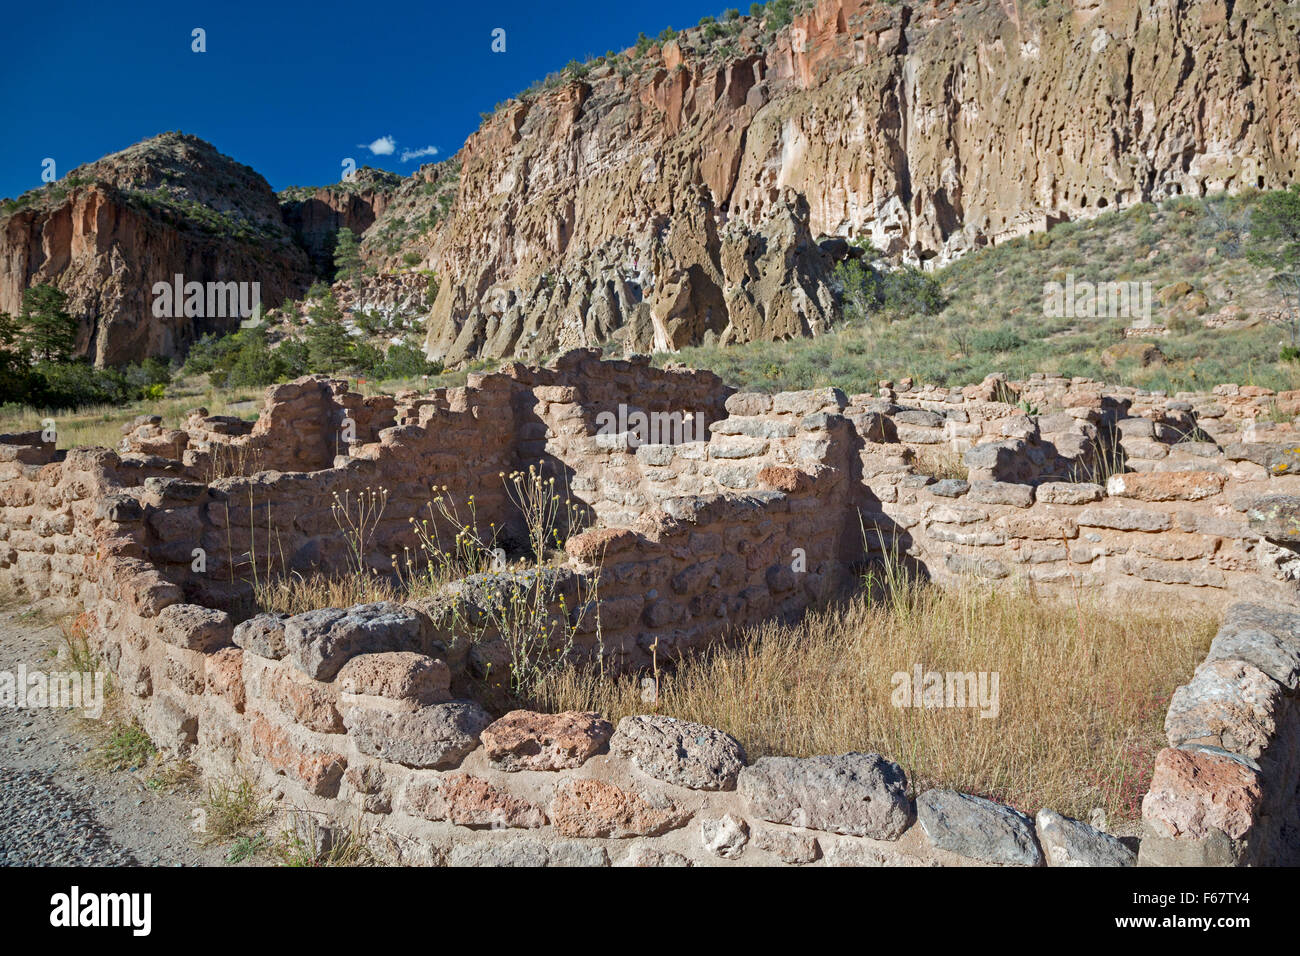 Los Alamos, New Mexico - Bandelier National Monument contiene le rovine di ancestrali Pueblo abitazioni. Foto Stock